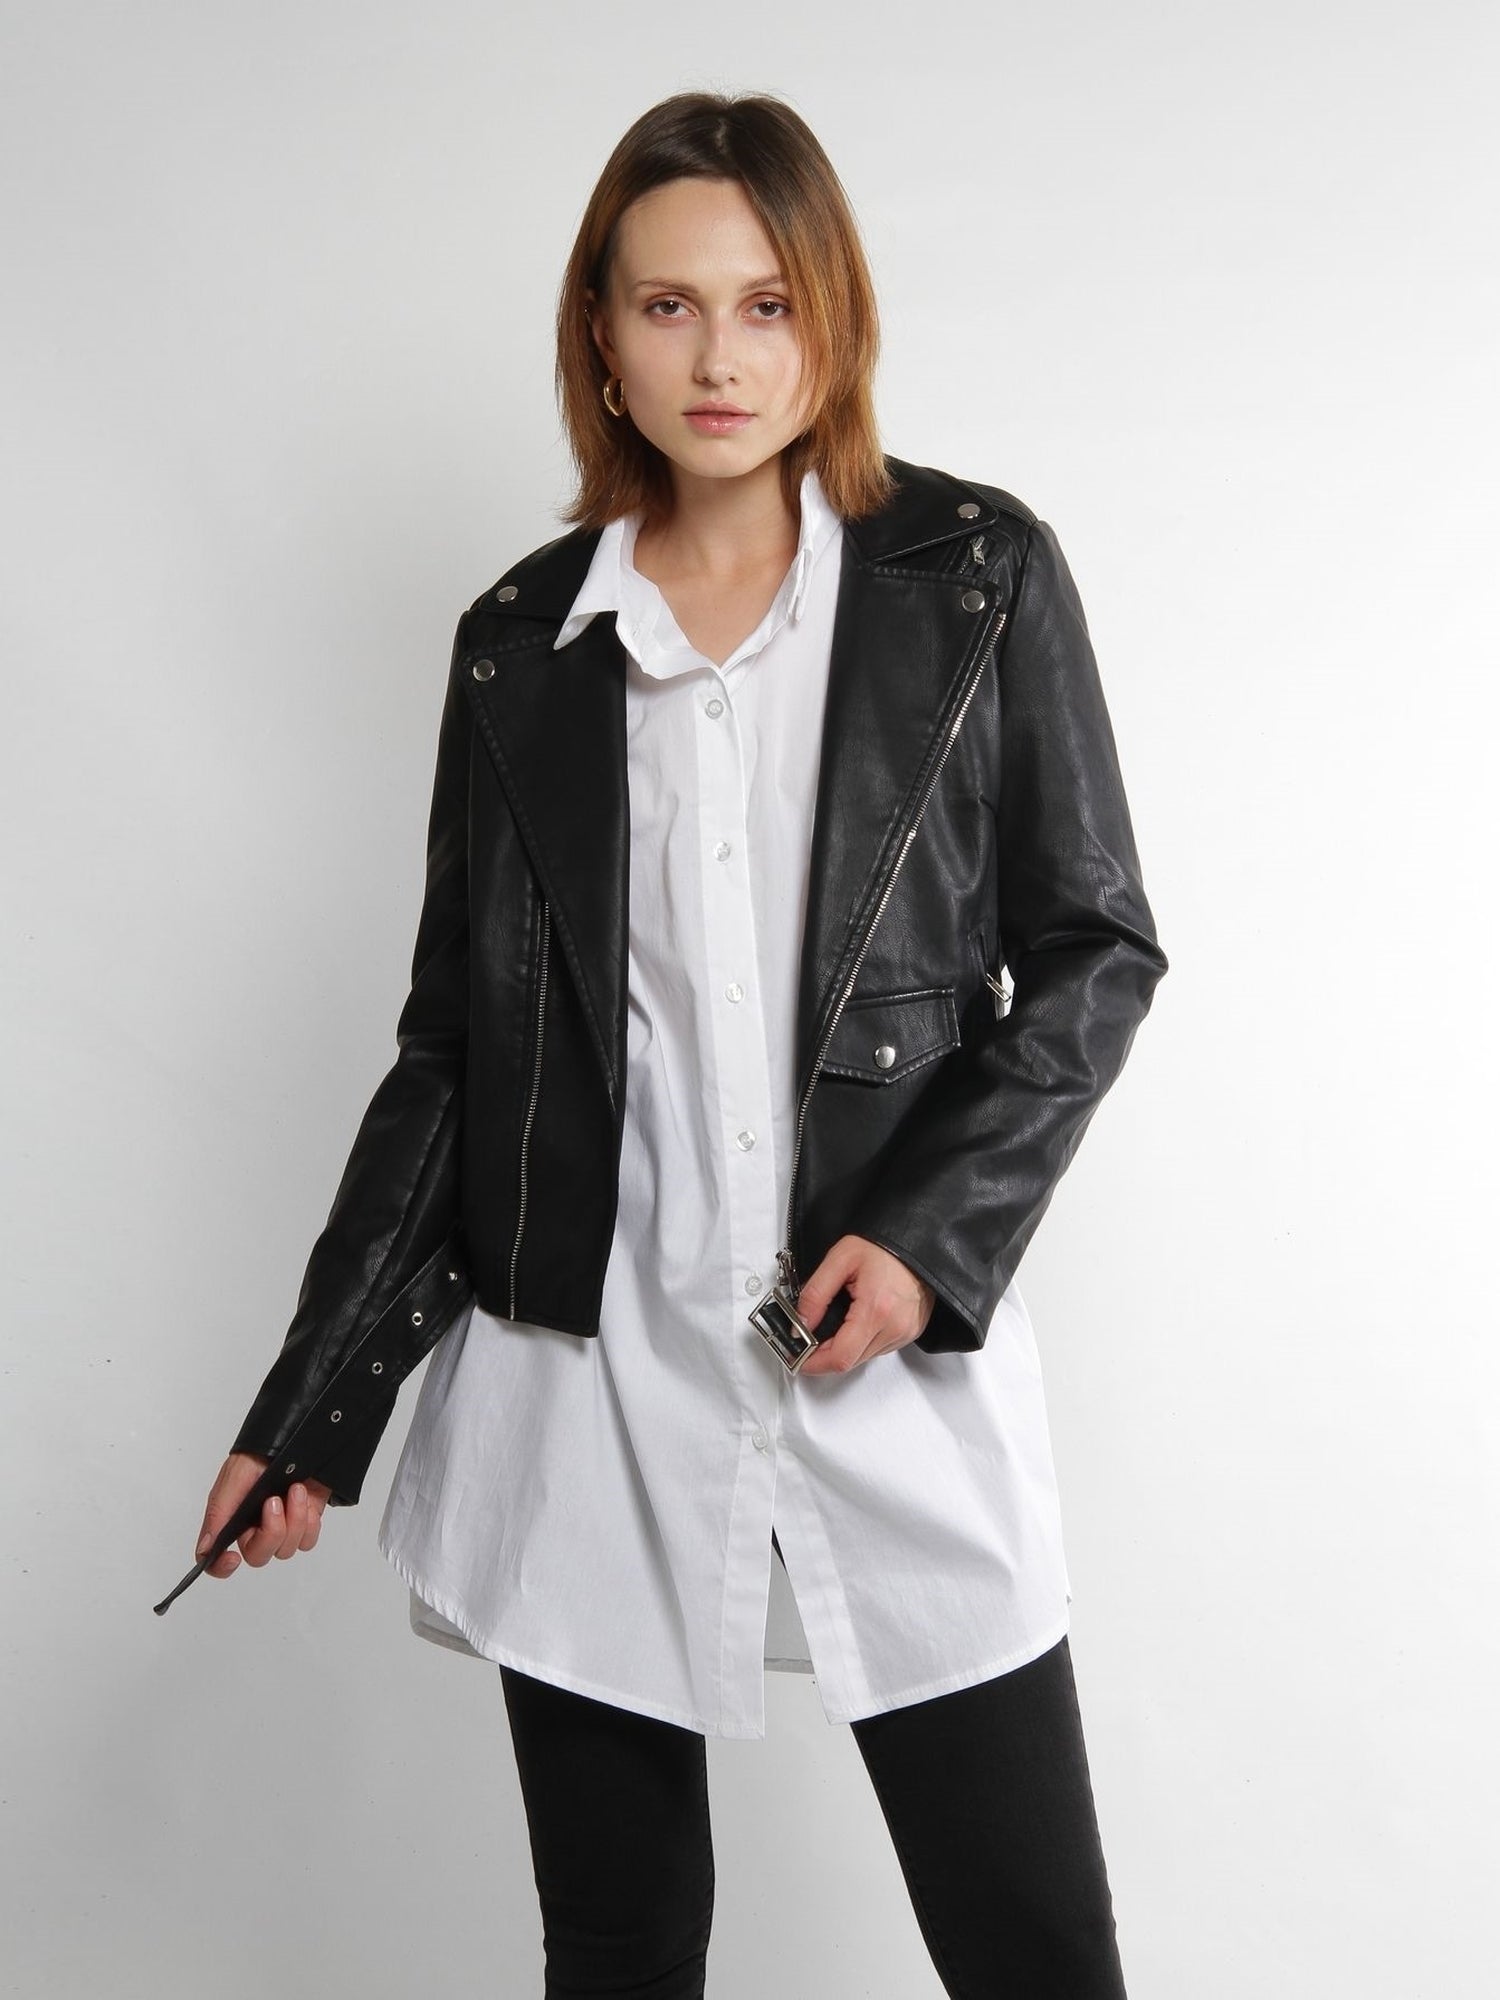 Black PU Leather Jacket - NIXII Clothing